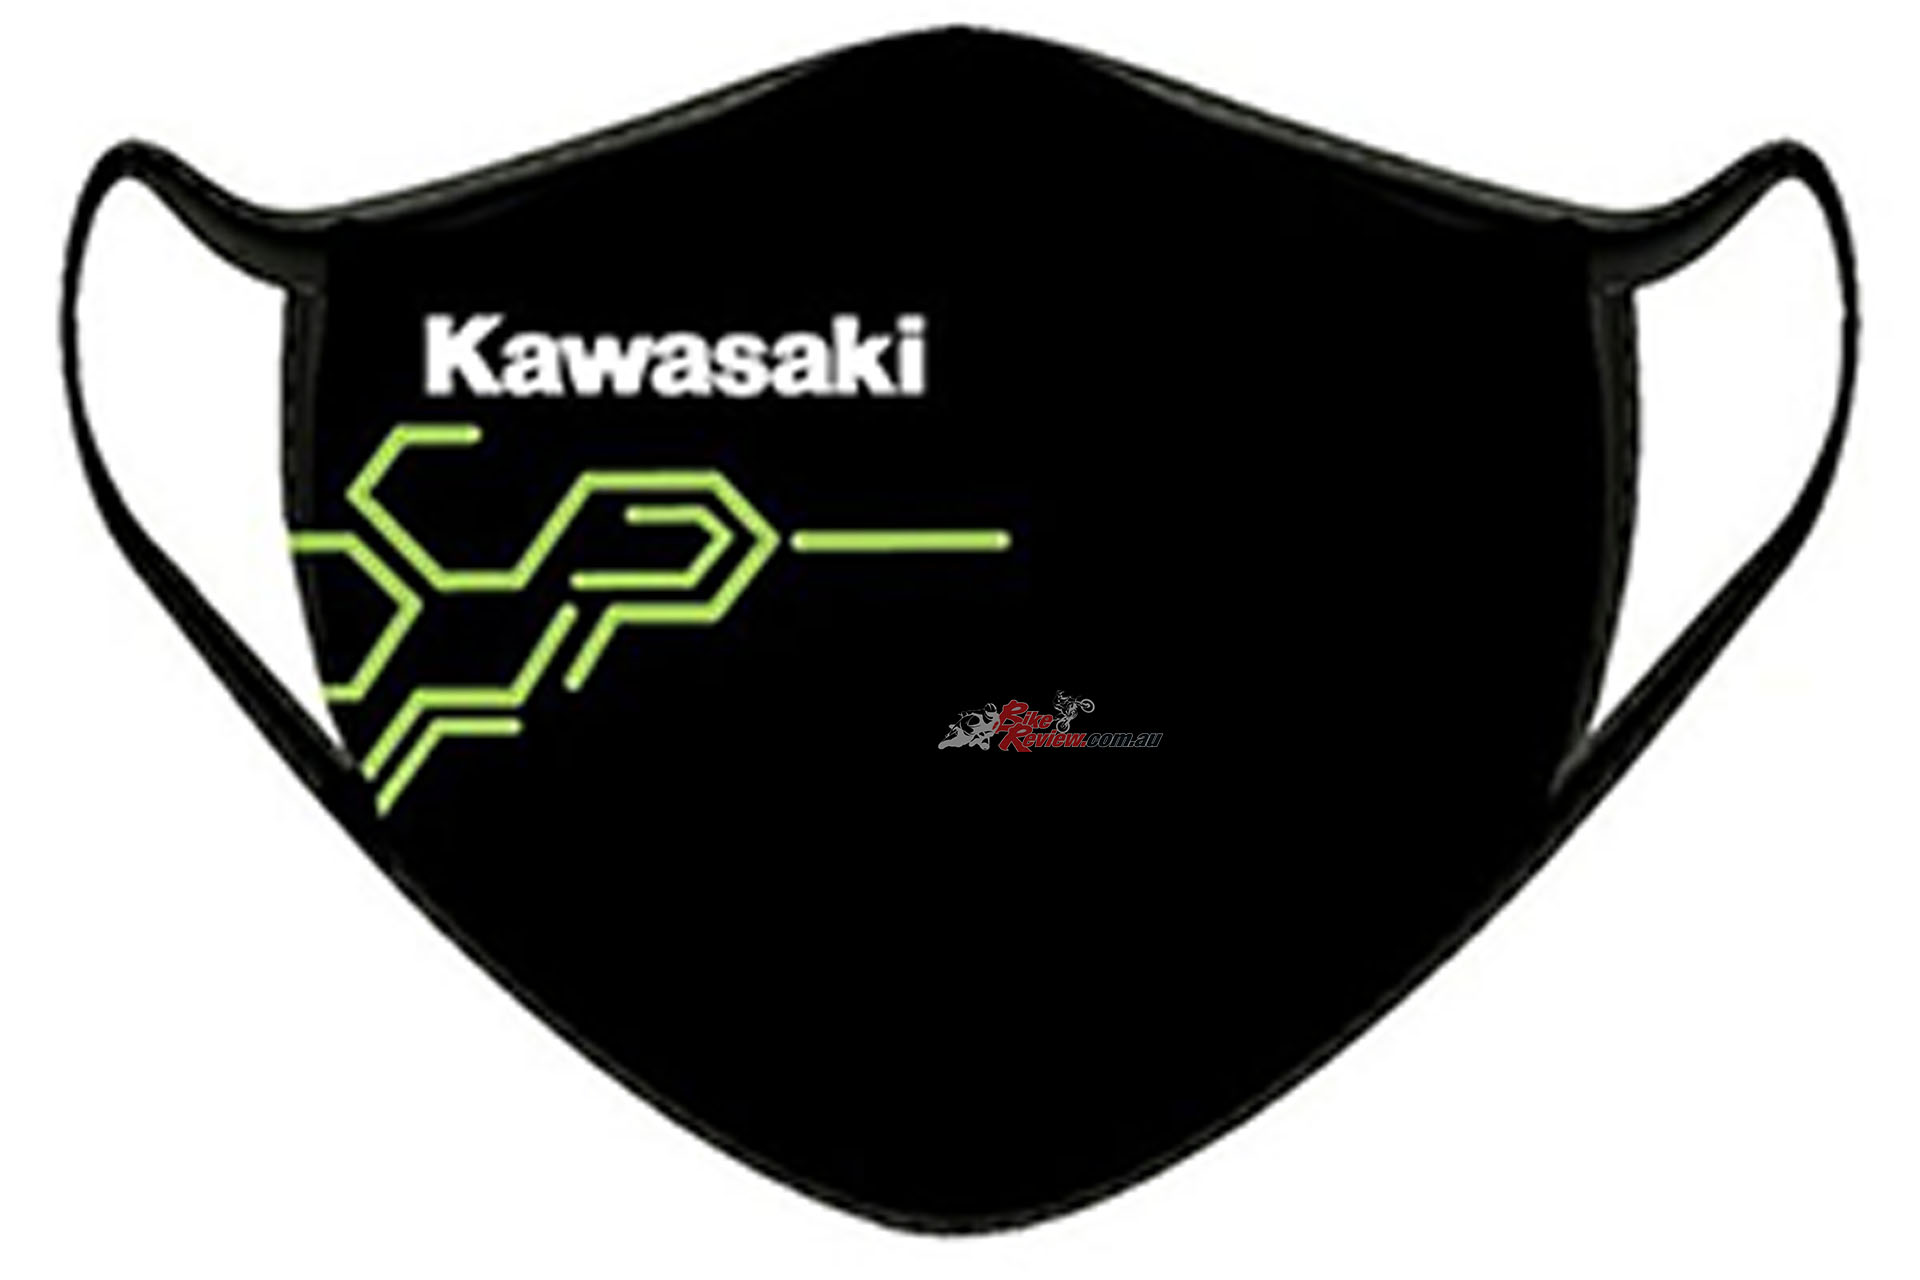 Meddele udkast Pygmalion Kawasaki Face Masks Back In Stock For Just $9.99 - Bike Review